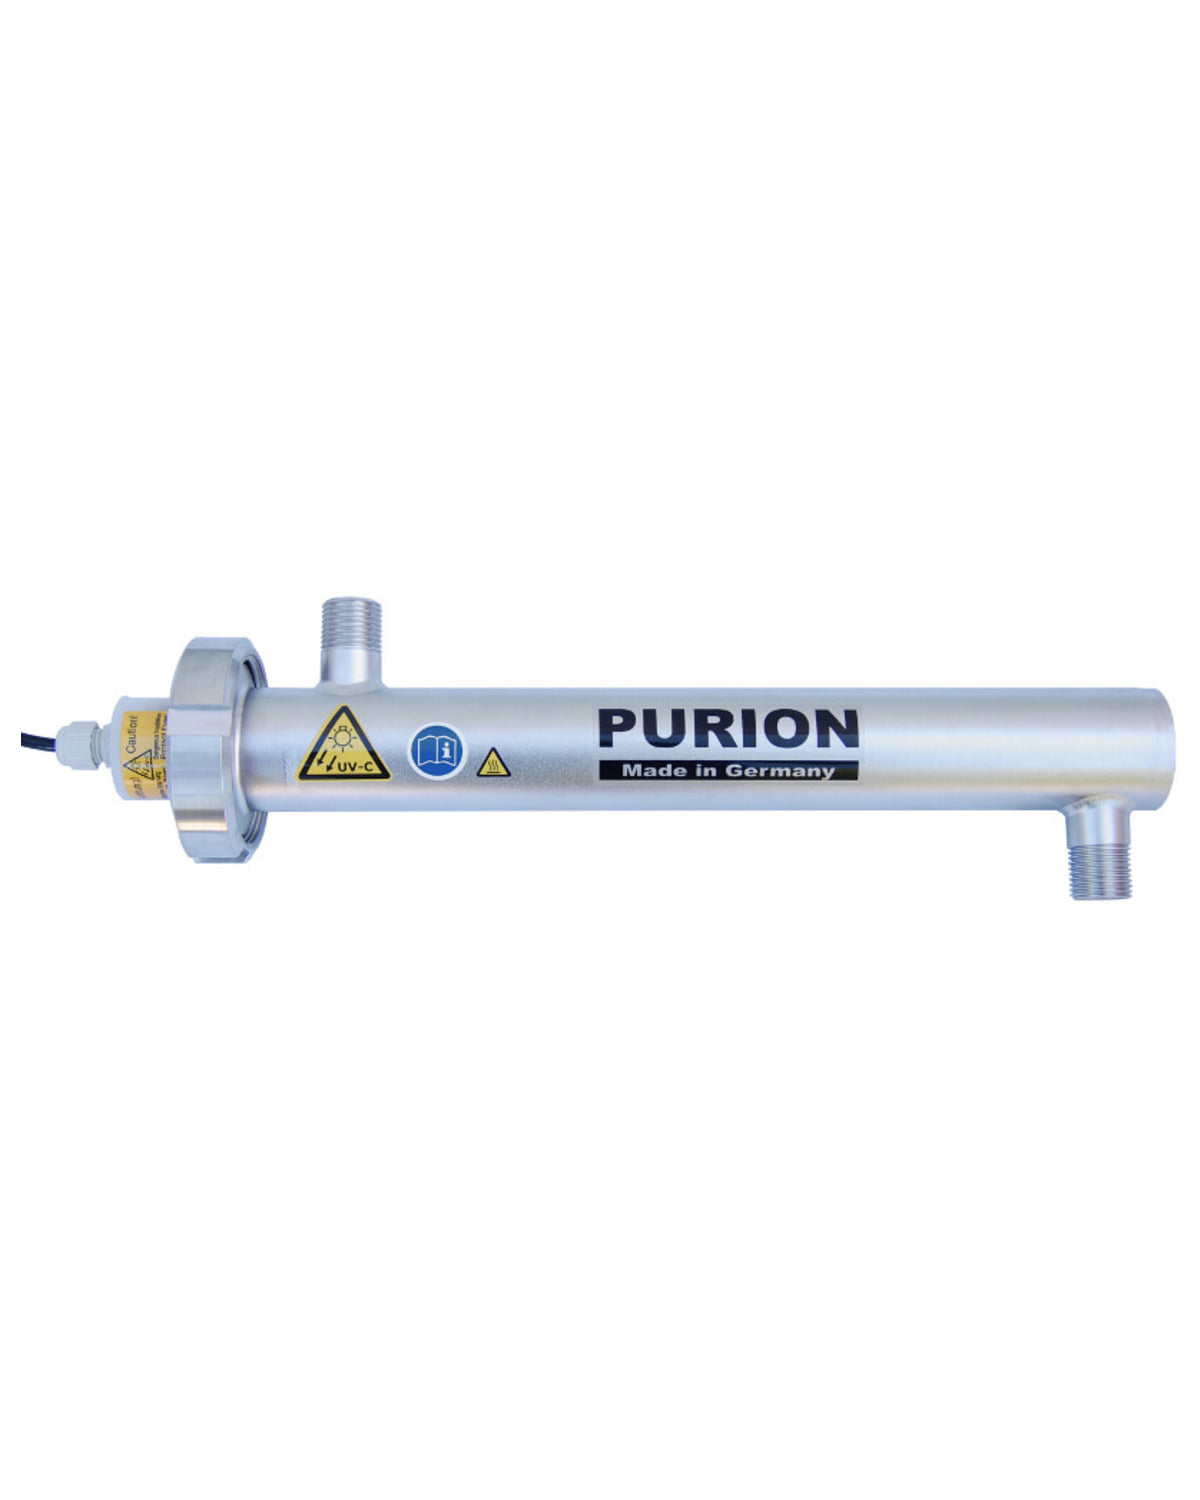 Das PURION 500 PRO OTC Plus der PURION GmbH ist ein leistungsstarkes Gerät, das UV-C-Strahlung zur effektiven Desinfizierung von Oberflächen nutzt.